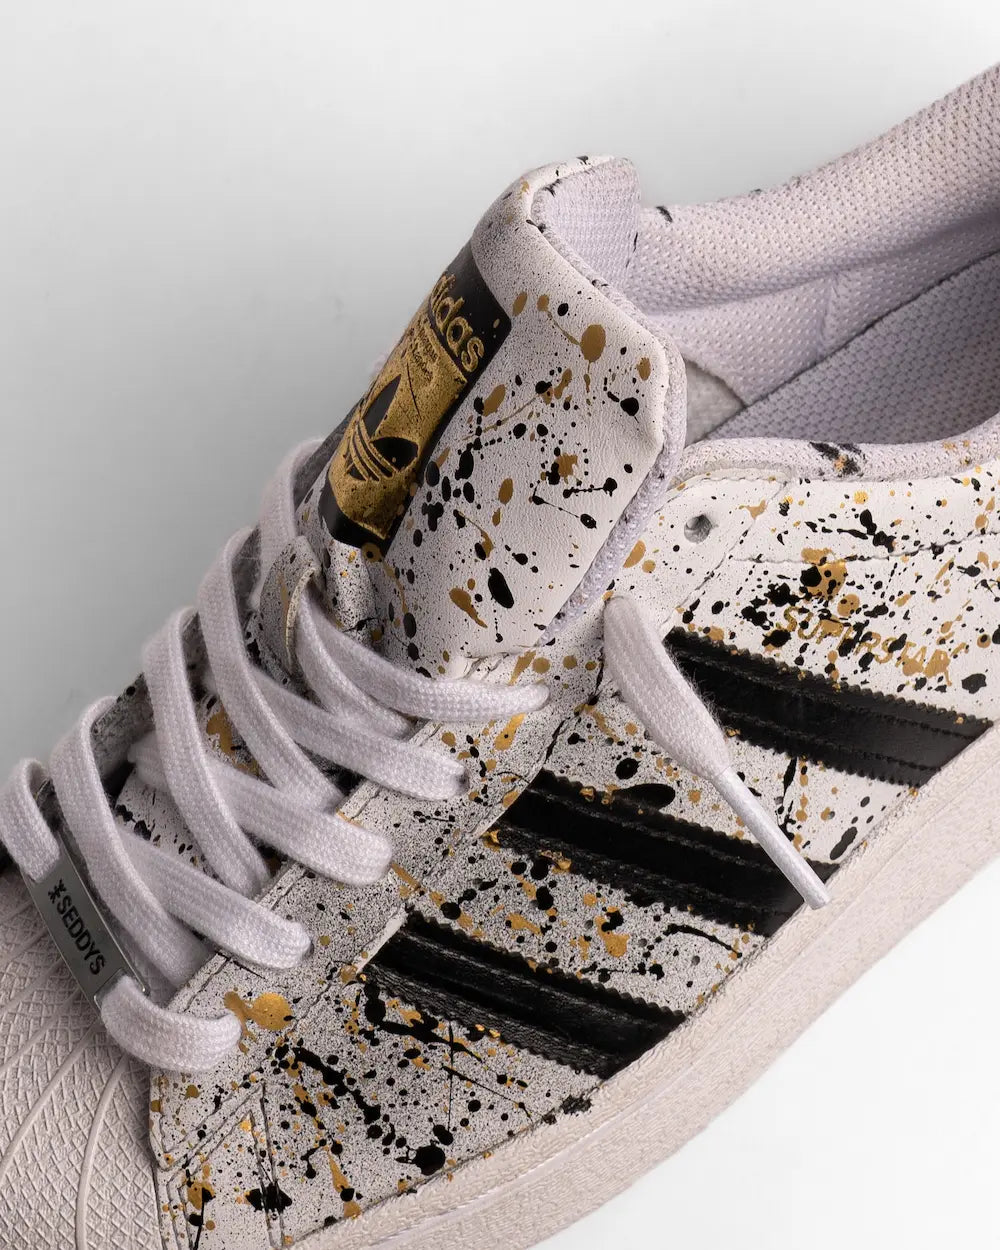 Adidas Superstar dipinta a mano con tecnica di schizzatura di colore nelle tonalità oro e nero